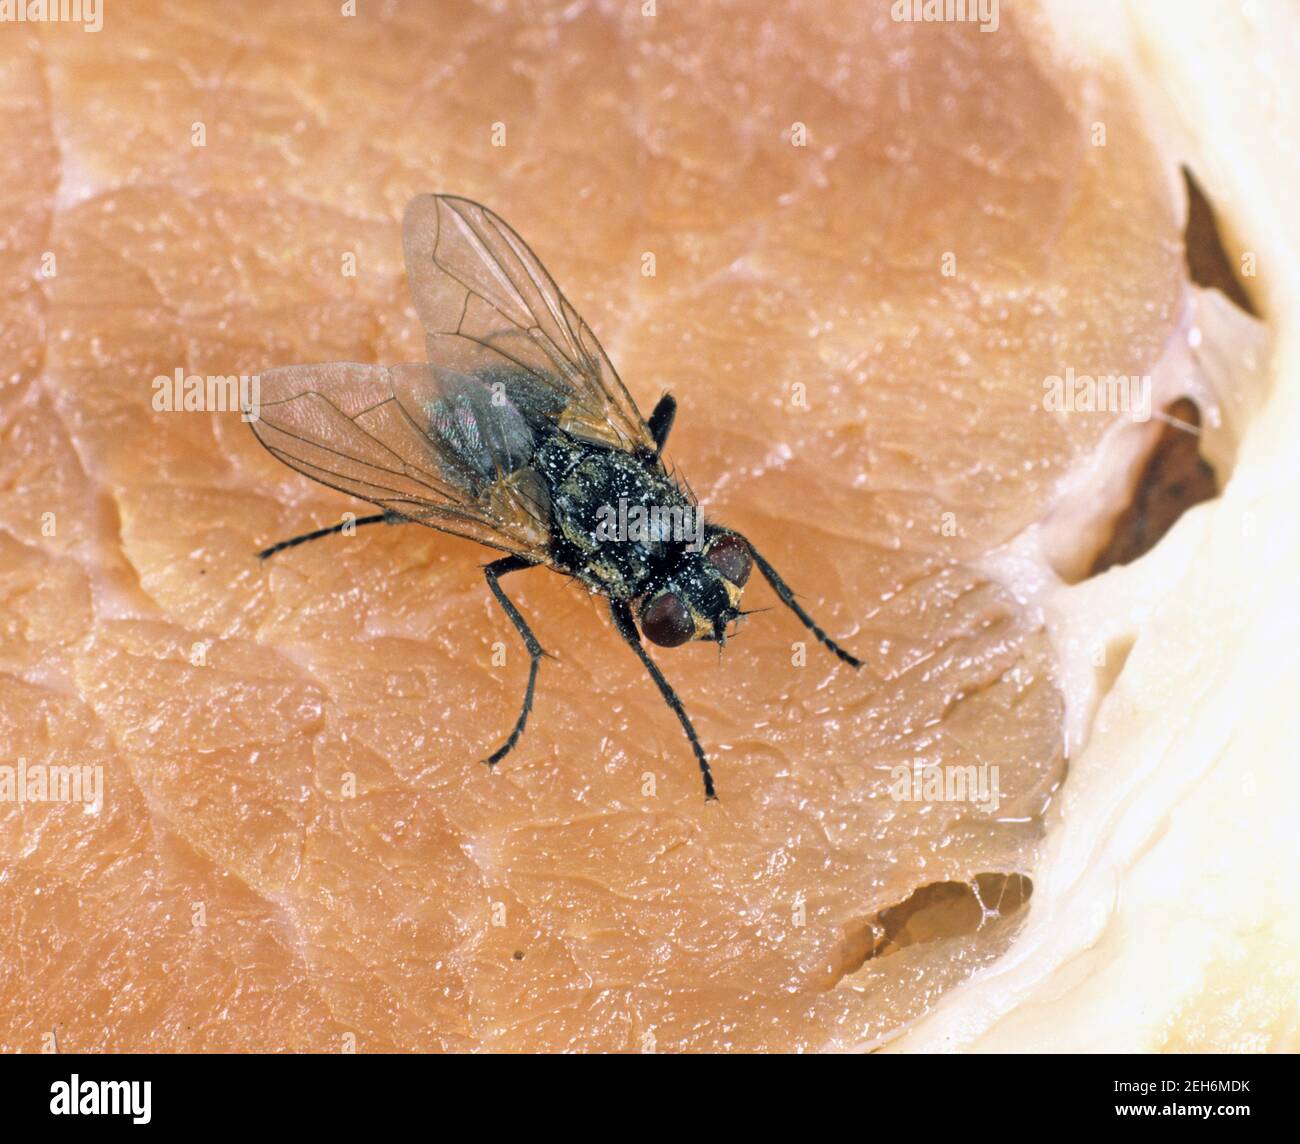 Hausfliege (Musca domestica) Erwachsene öffentliche Gesundheit Schädling auf Speck - Küchenhygiene Stockfoto